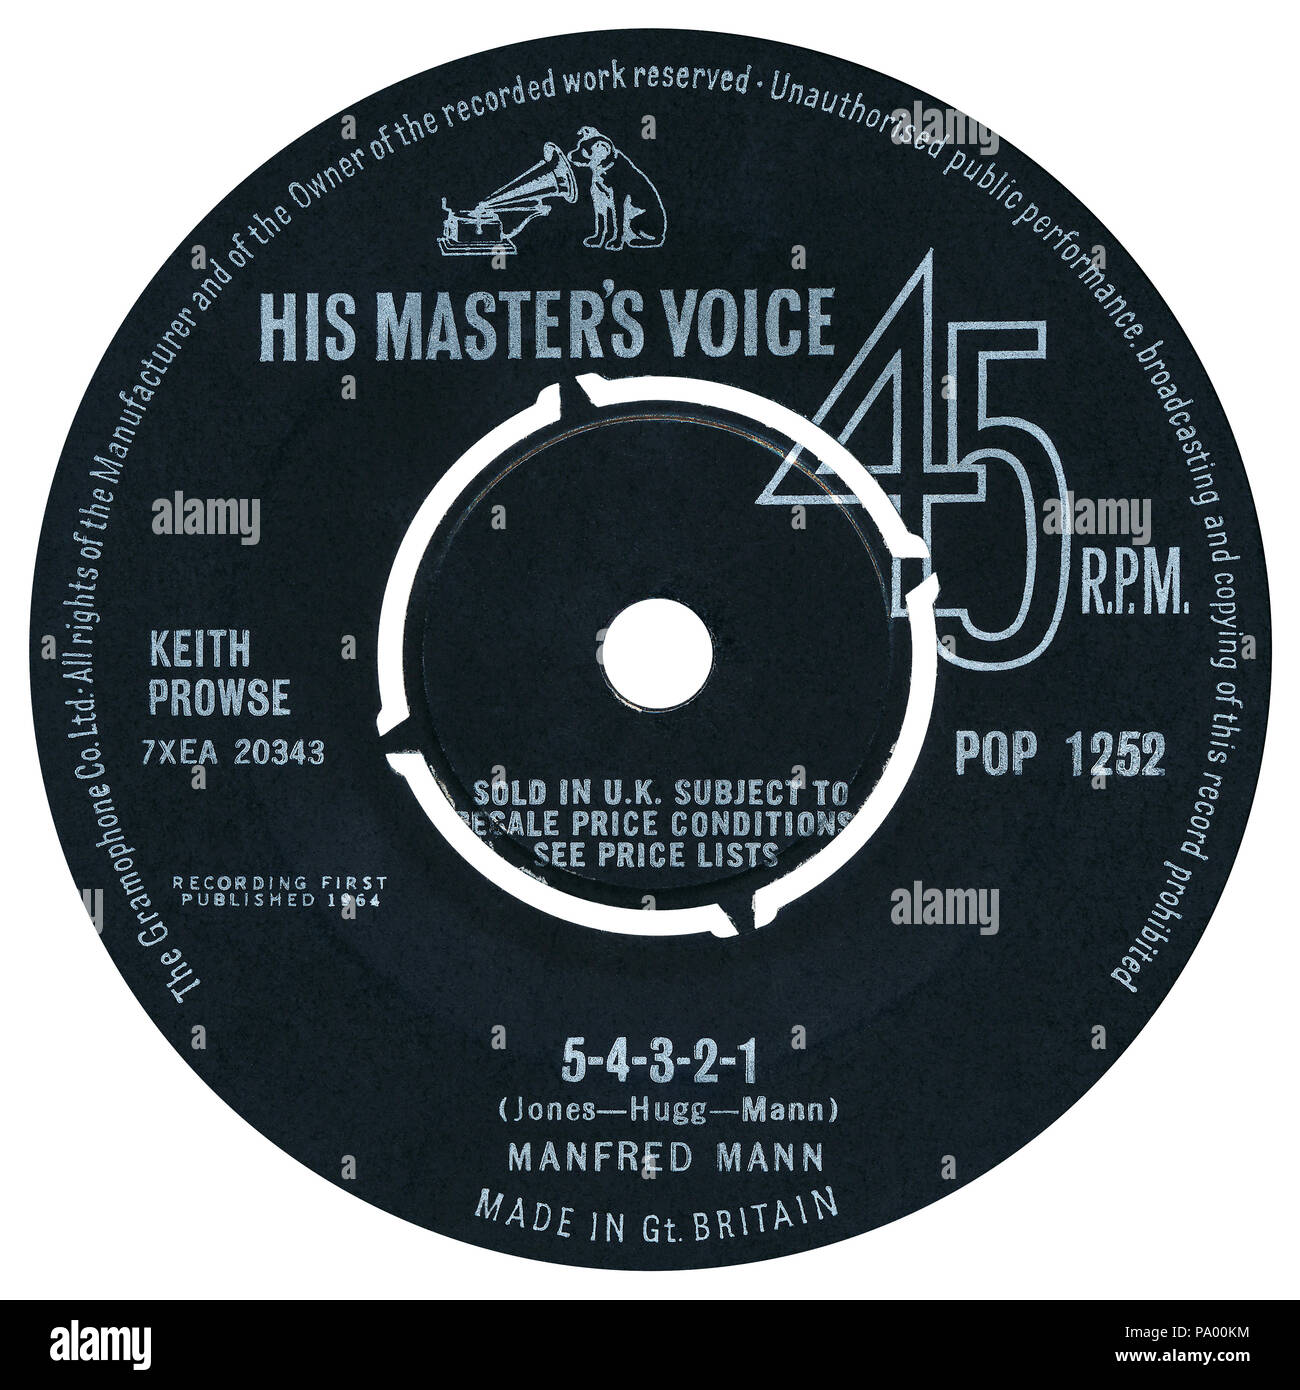 Reino Unido 45 rpm 7' solo de 5-4-3-2-1 por Manfred Mann en la etiqueta de la voz de su Amo desde 1964. Escrito por Paul Jones, Mike Hugg y Manfred Mann y producidos por John Burgess. Foto de stock